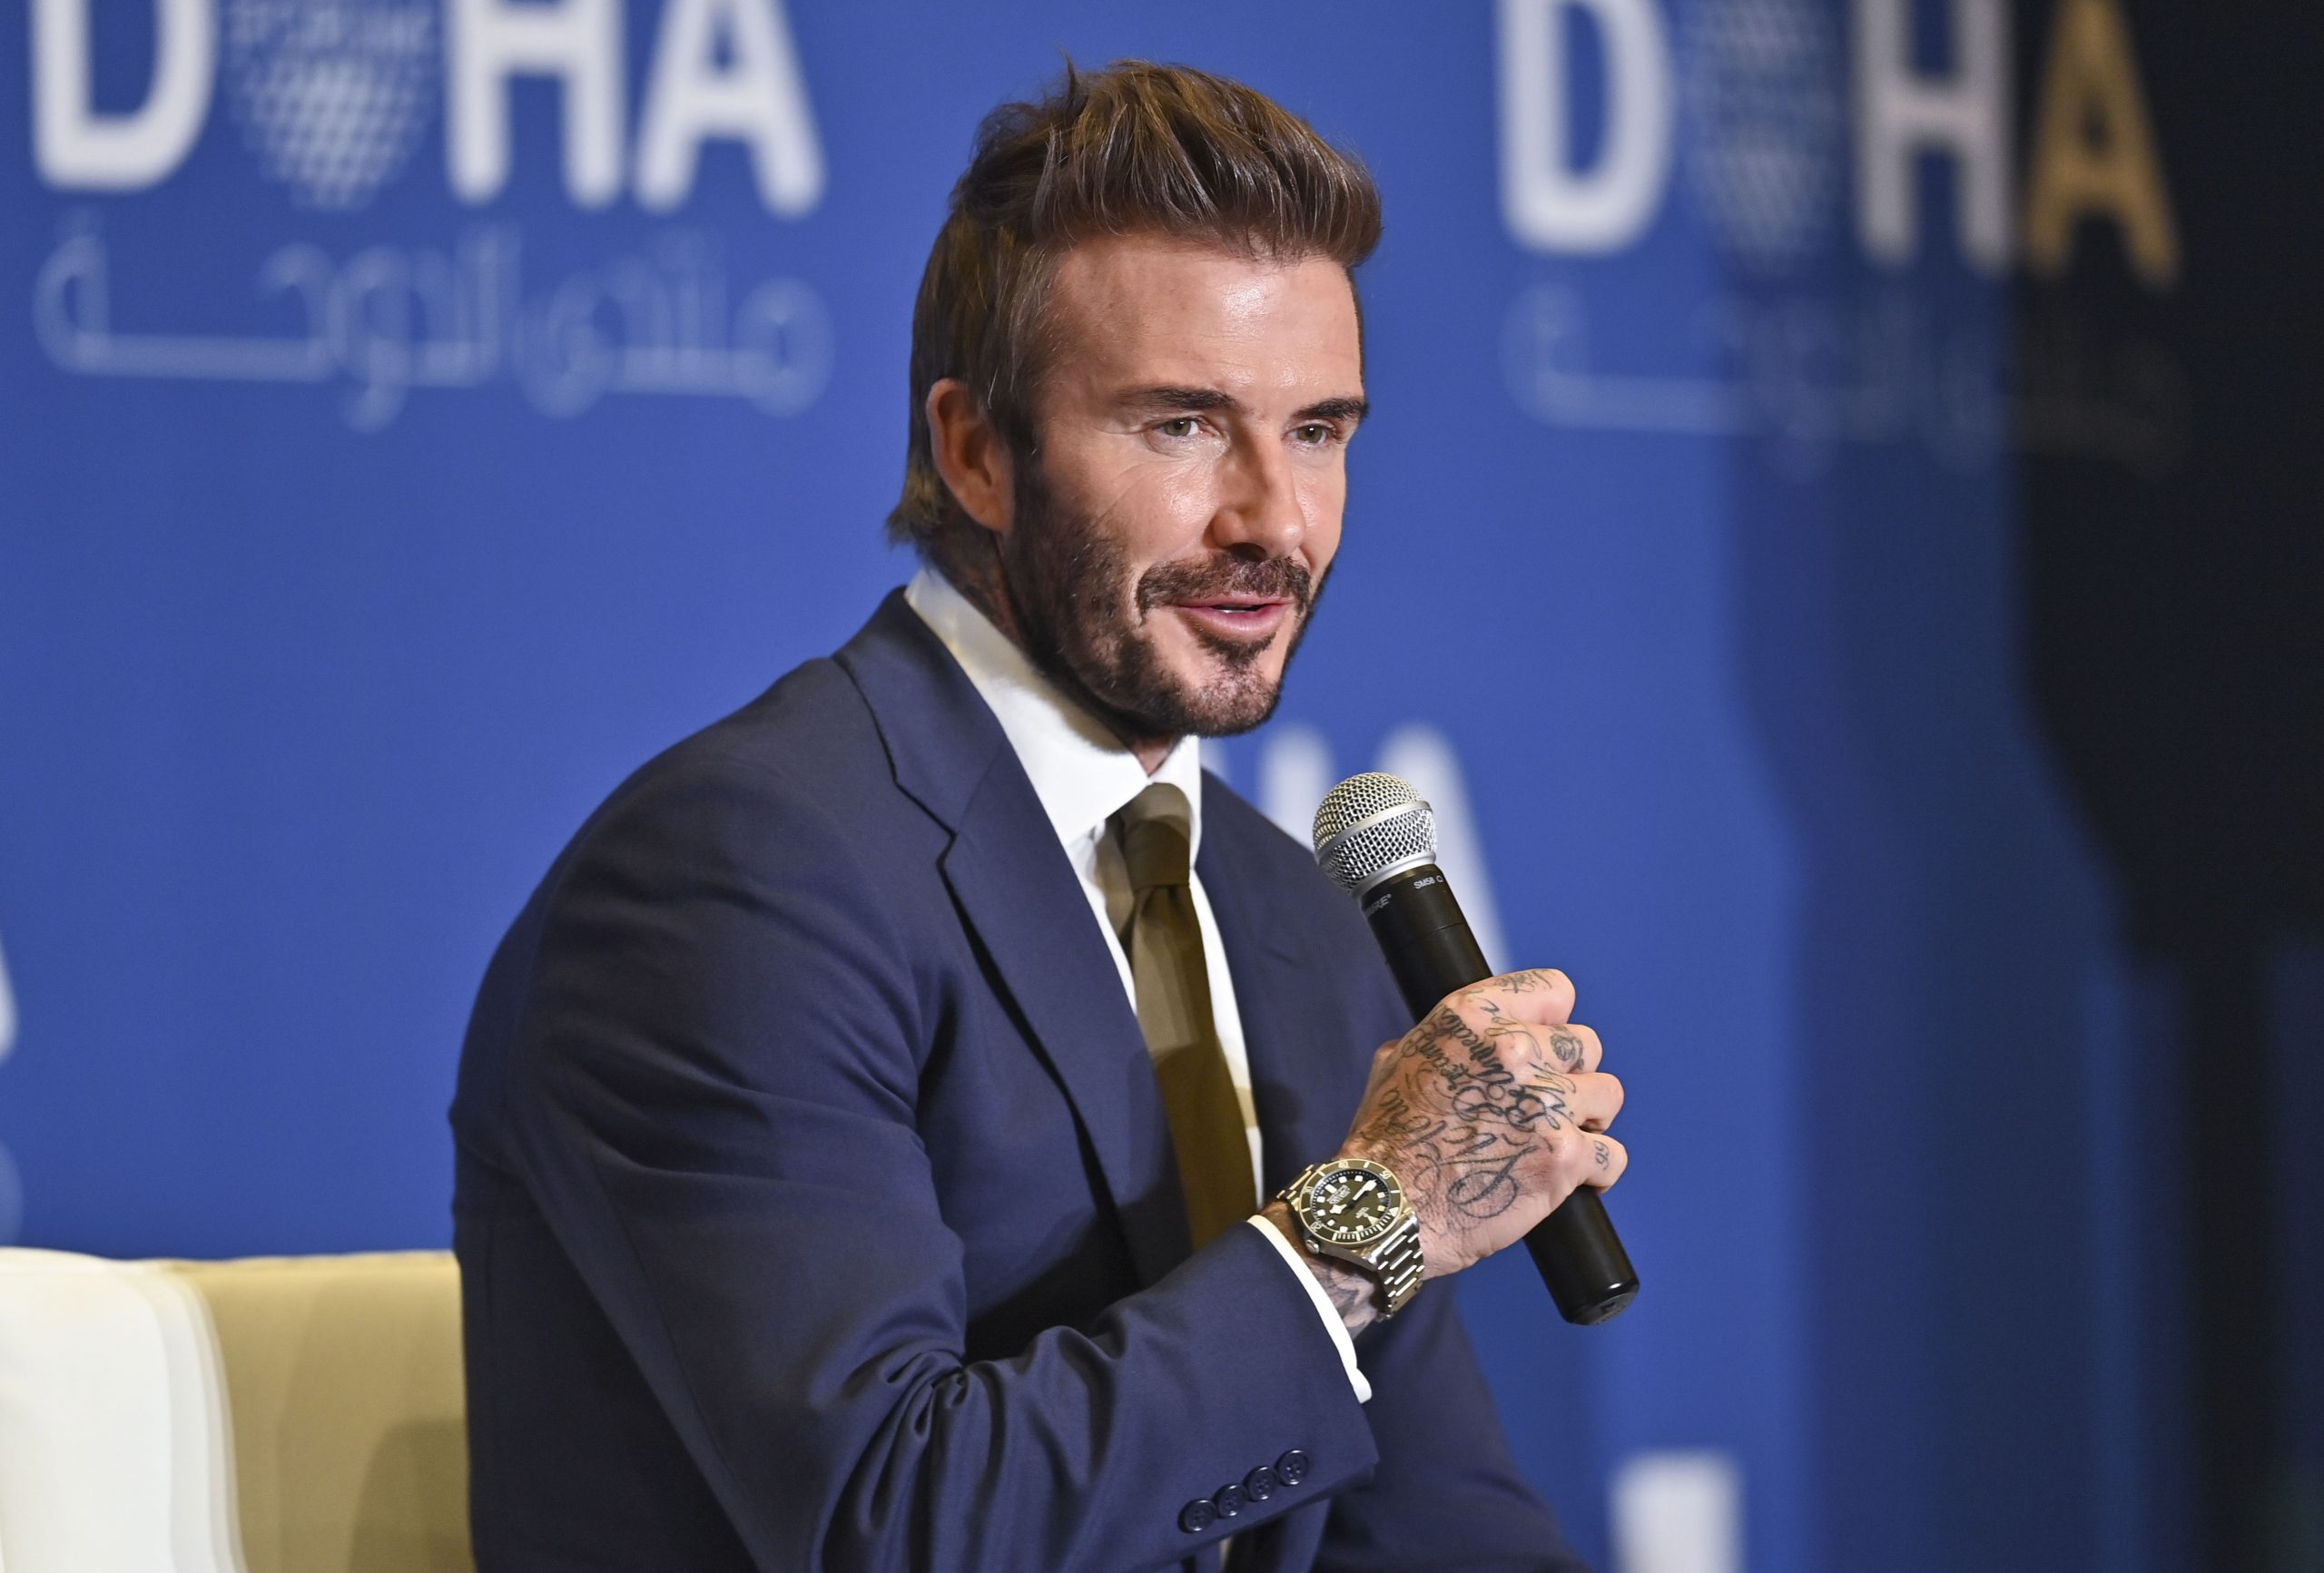 Voormalig Engels topvoetballer David Beckham tijdens een forum in de Qatarese hoofdstad Doha in maart 2022. Foto EPA/Noushad Thekkayil